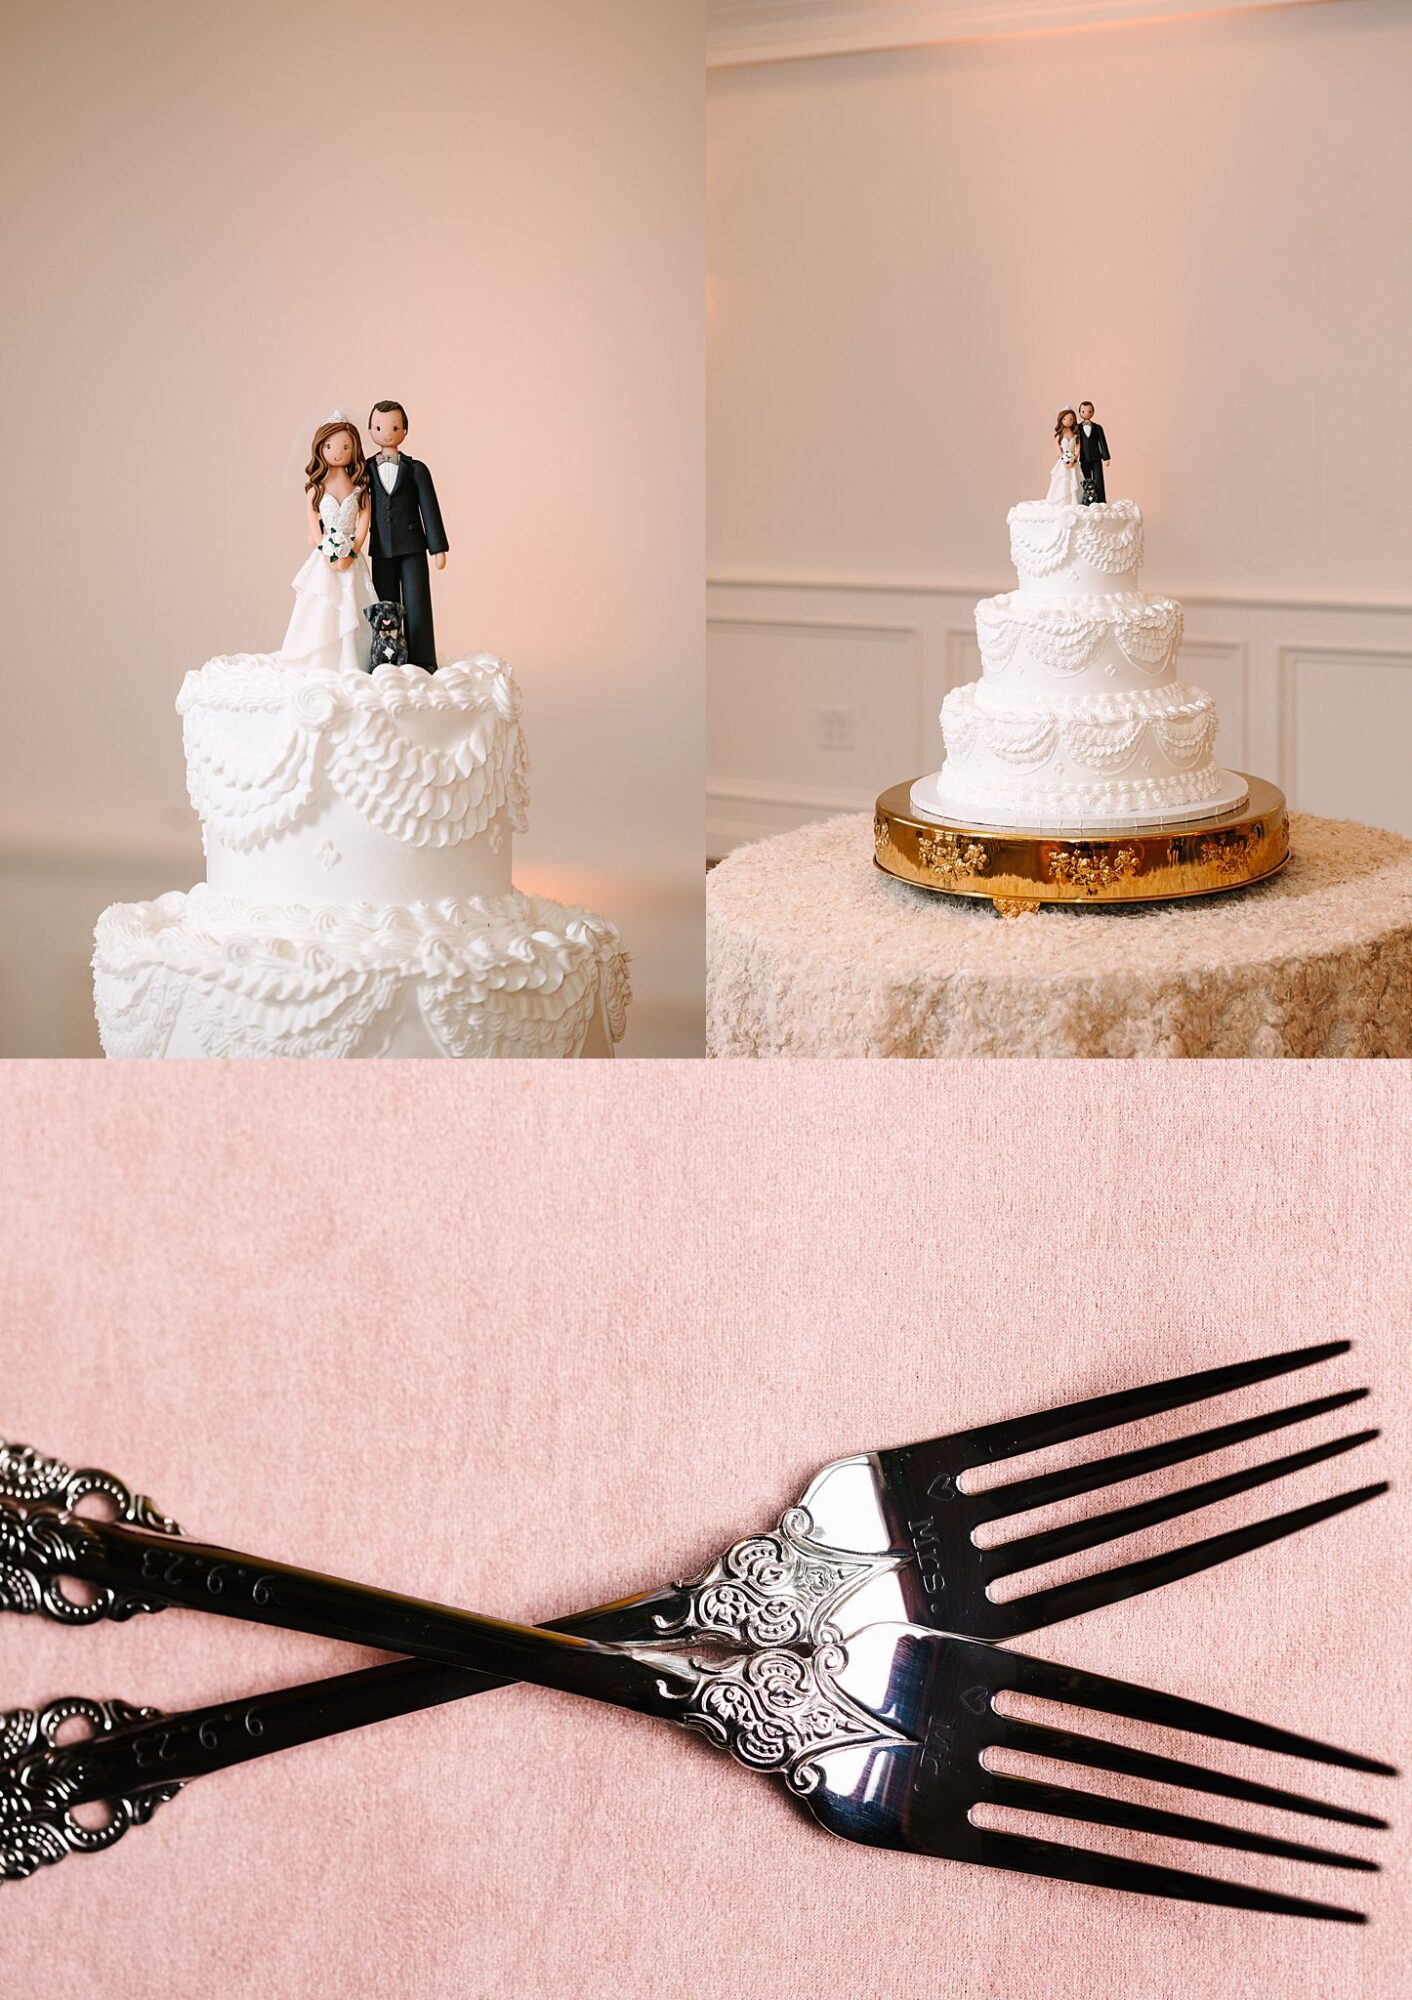 Gerado's wedding cake